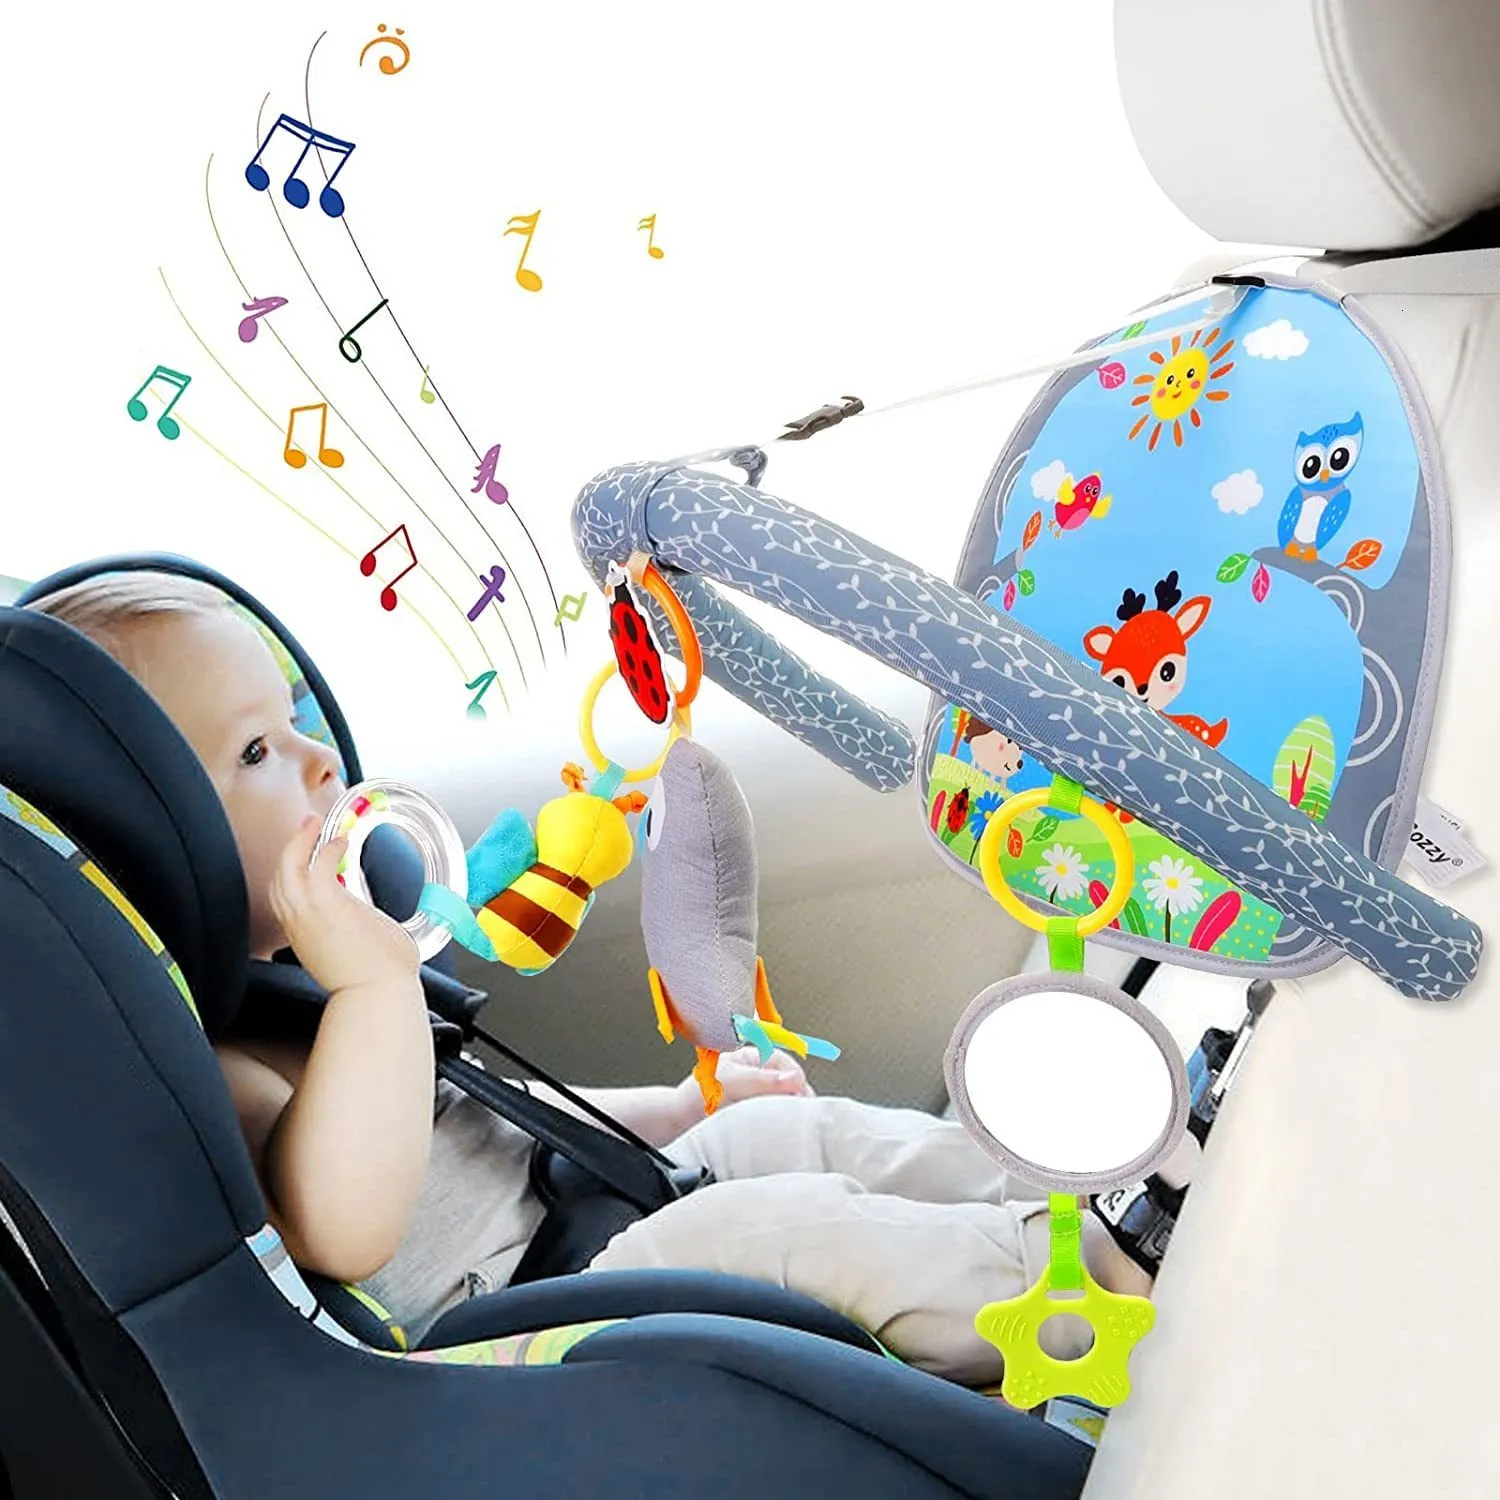 Коляски аксессуары аксессуары сзади автокресло игрушку для игры в центр работы в центр активности автомобильного сиденья с музыкальными зеркальными игрушками для детей Travel 230821